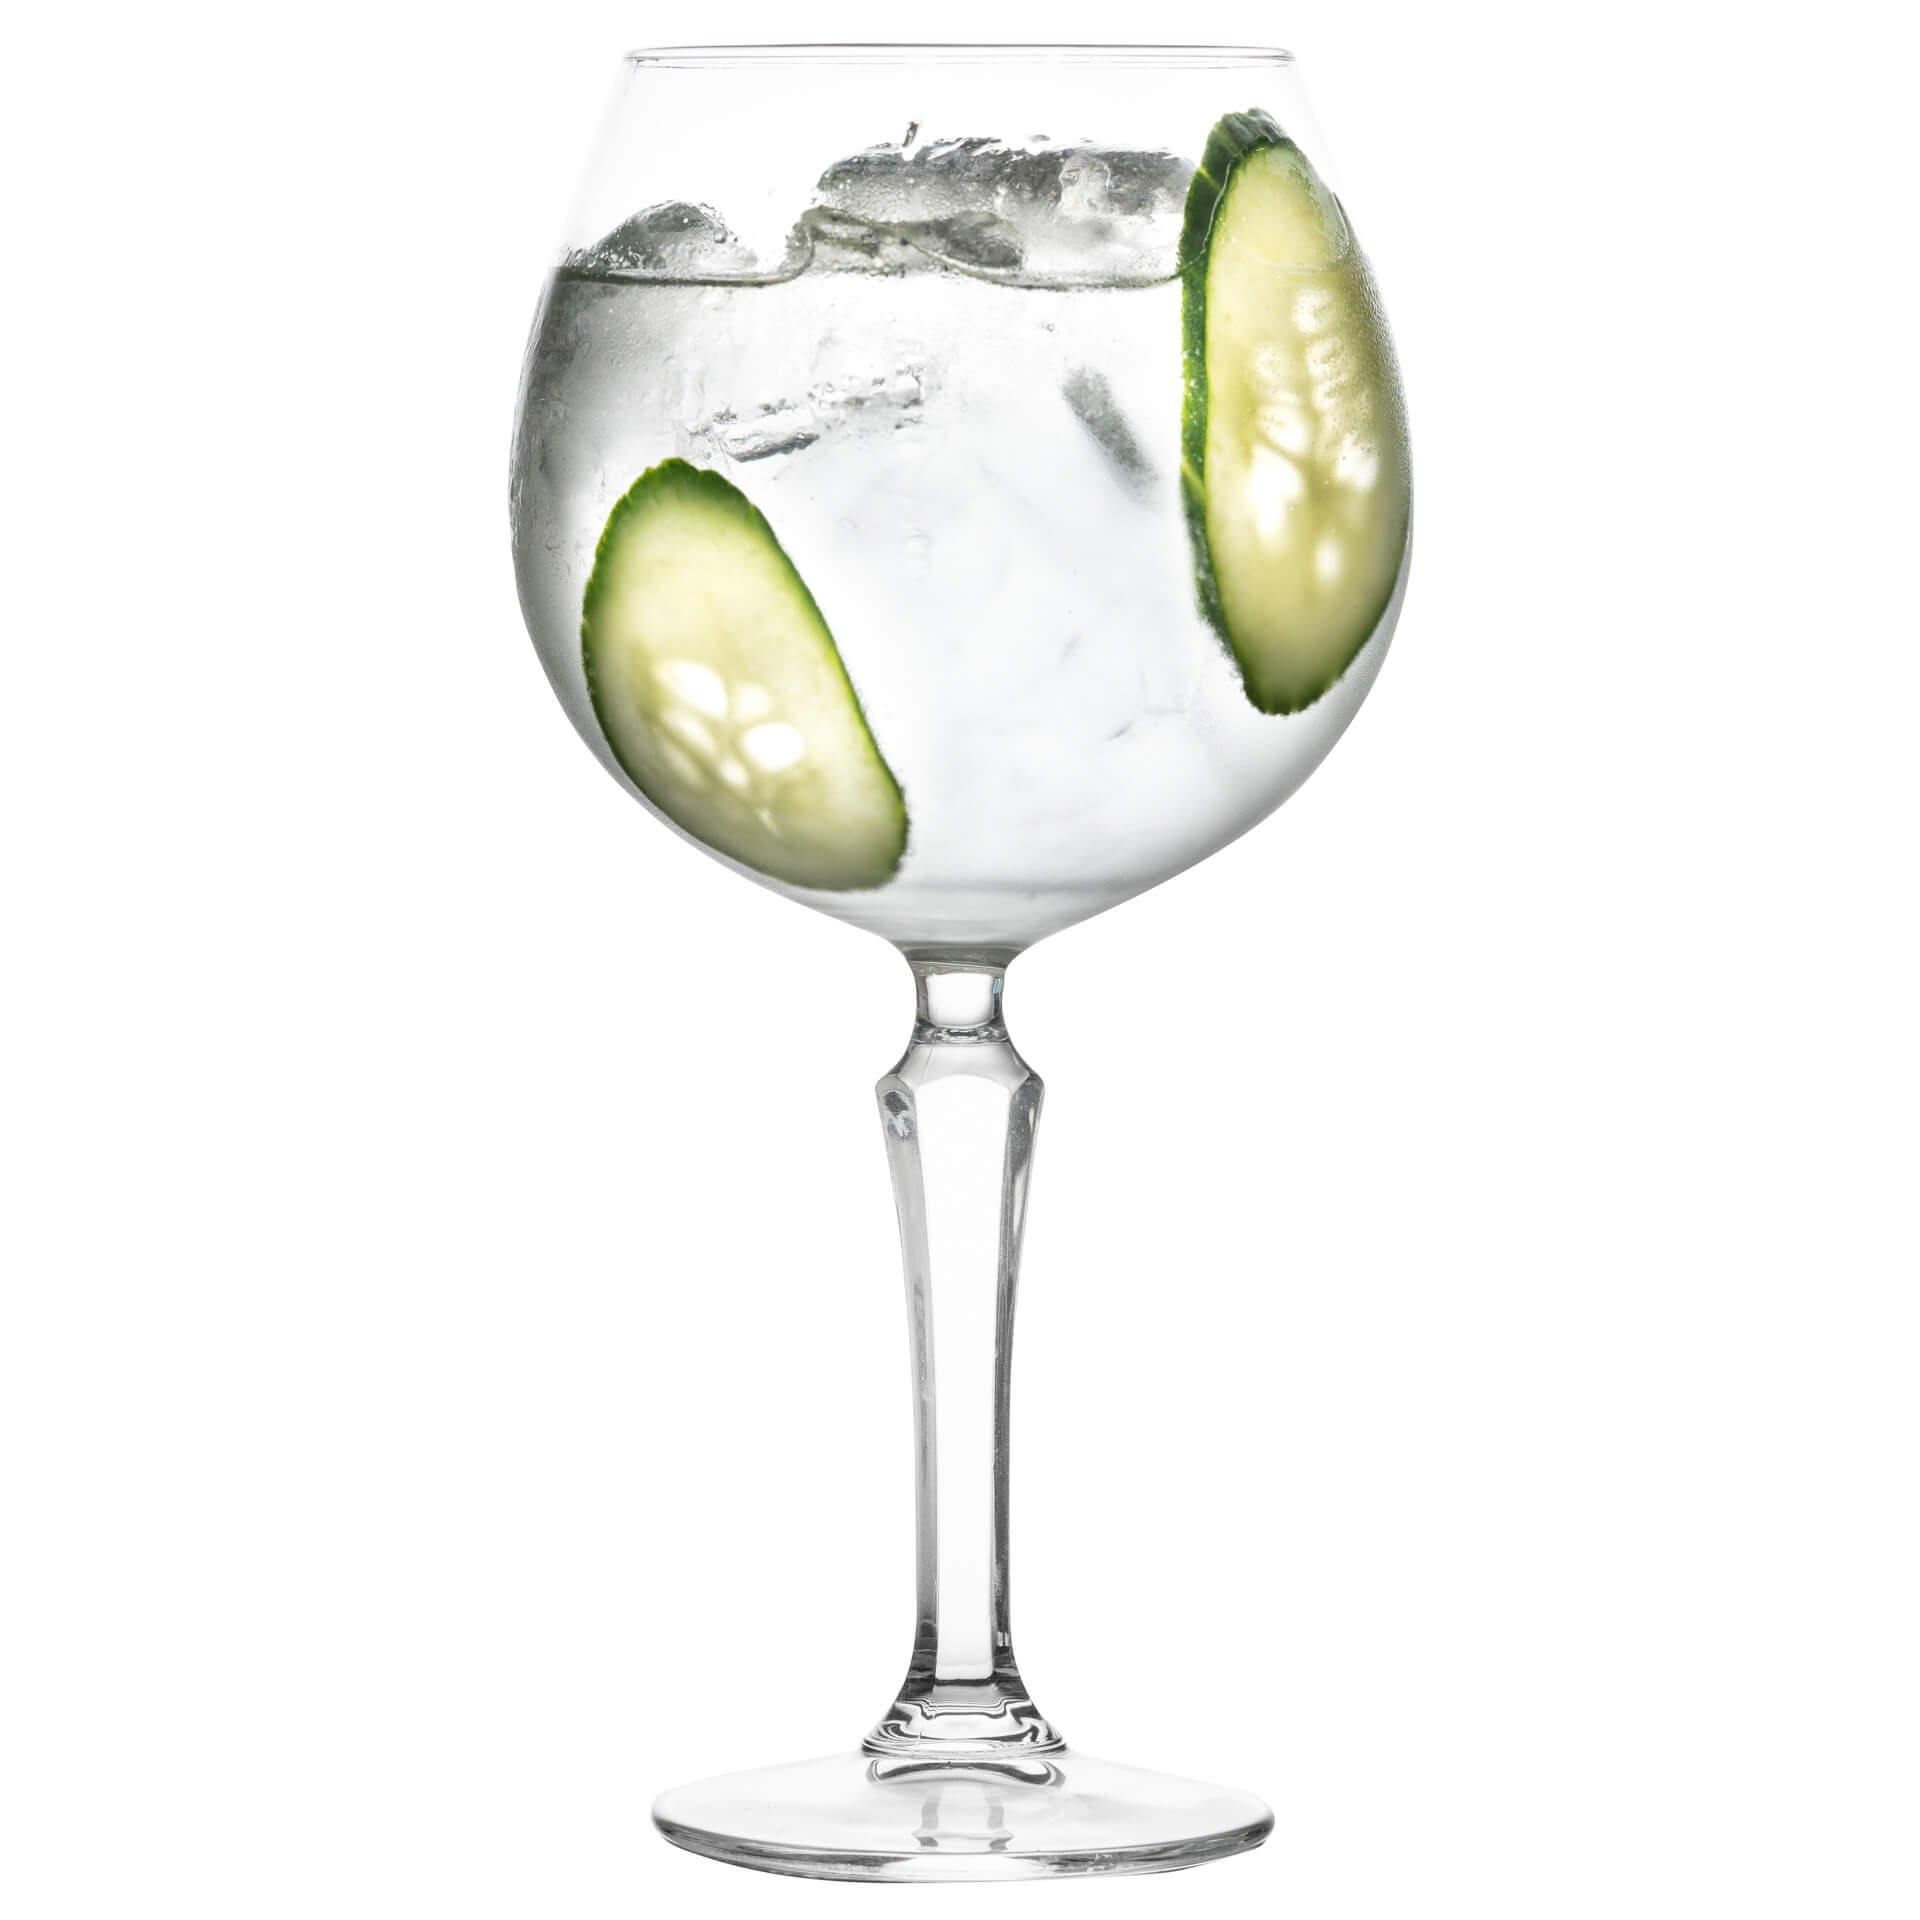 Gin & Tonic glass Spksy, Onis - 585ml (1 pc.)